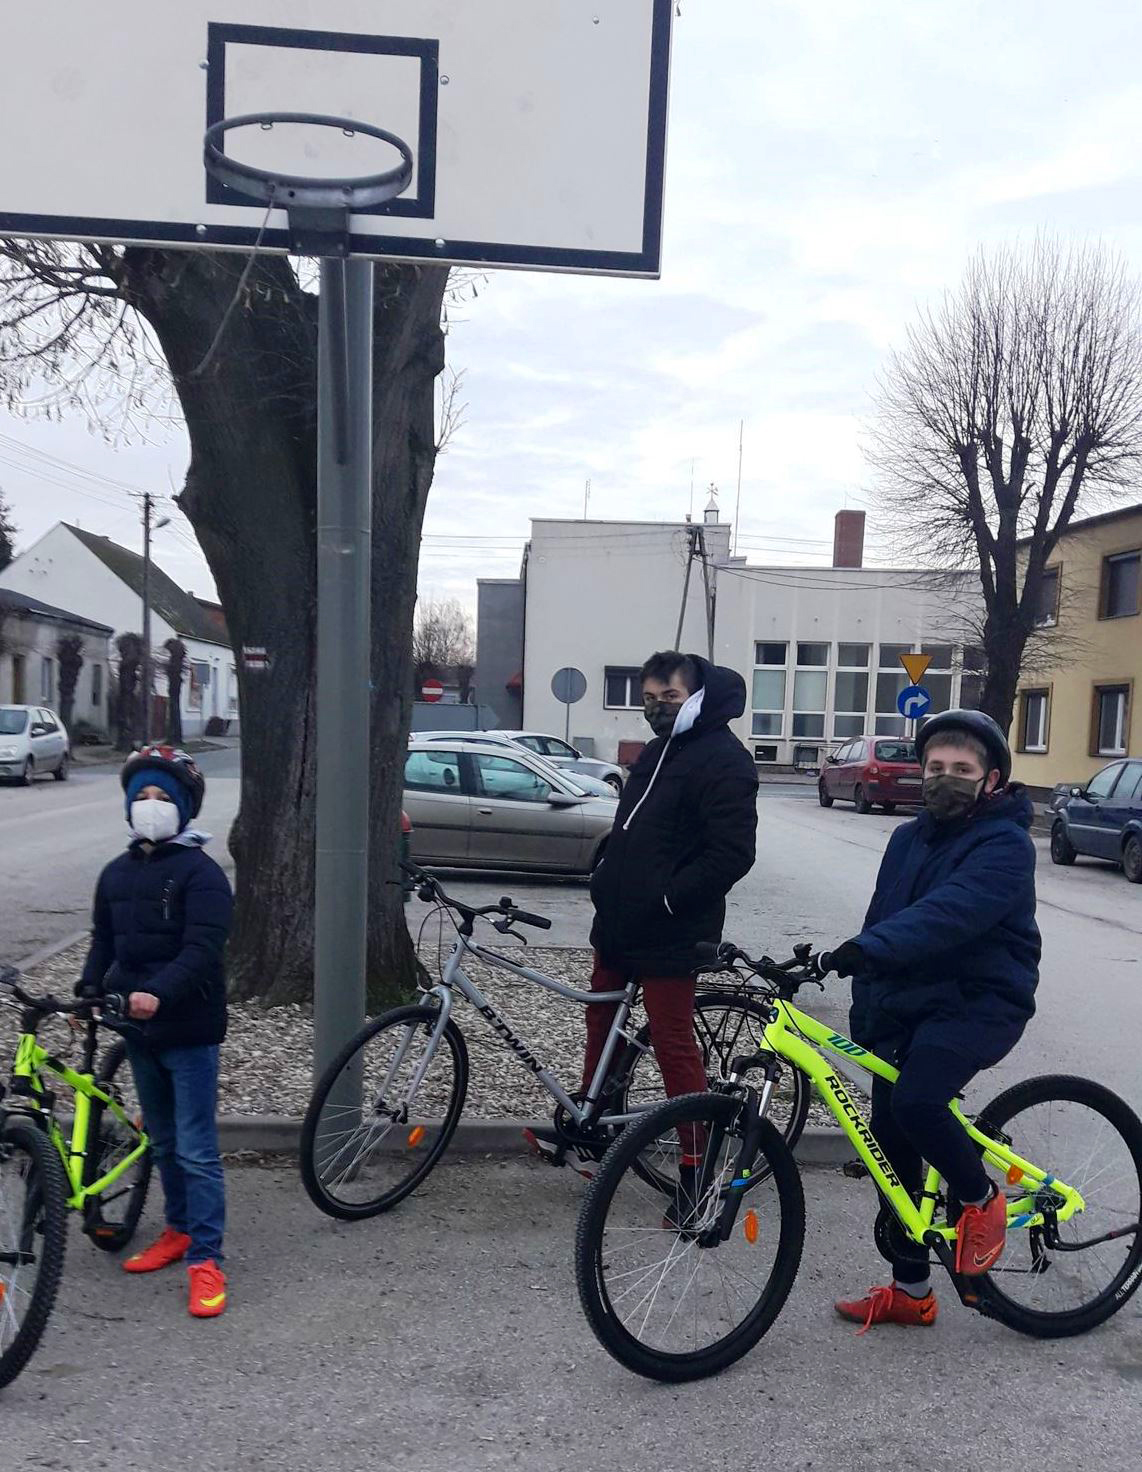 trzej chłopców stoi z rowerami na parkingu (w tle auta na parkingu)